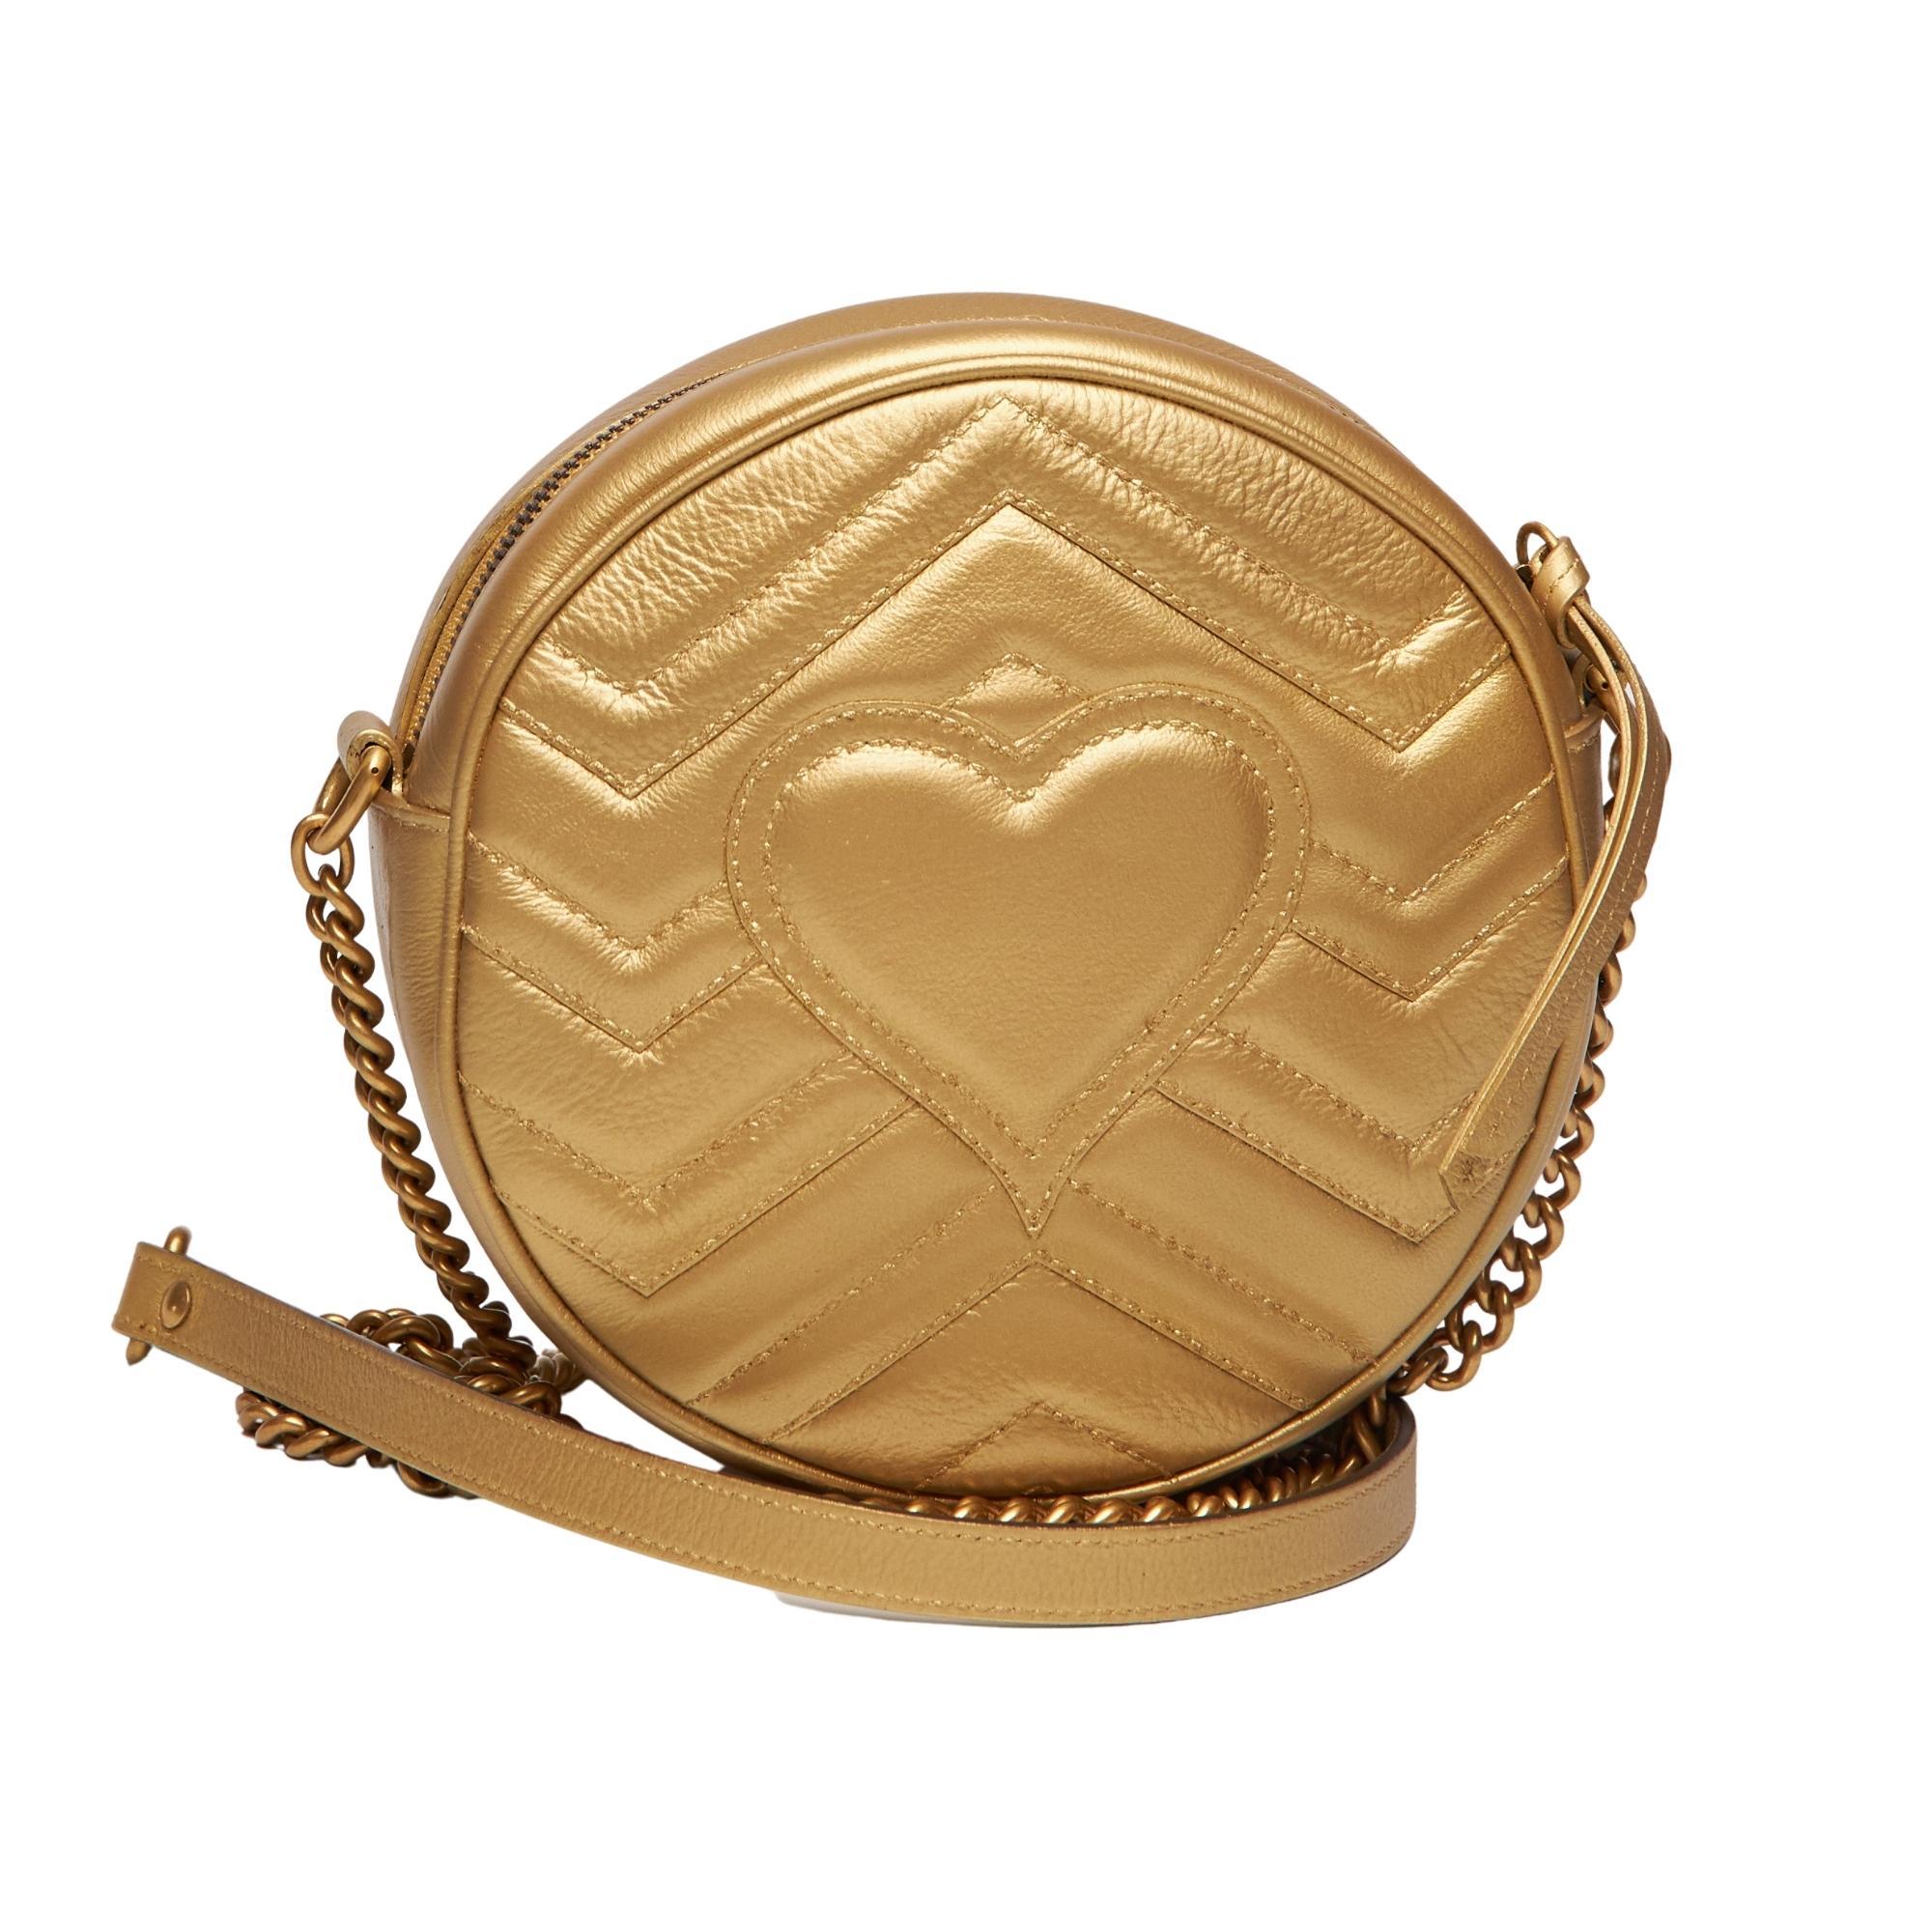 Cette épaule Gucci est fabriquée en cuir de veau doré et comporte le double logo G, ainsi que des éléments métalliques dorés et vieillis,
bandoulière en maillons de chaîne, doublure en satin et fermeture éclair sur le dessus.

COULEUR : Or
MATÉRIEL